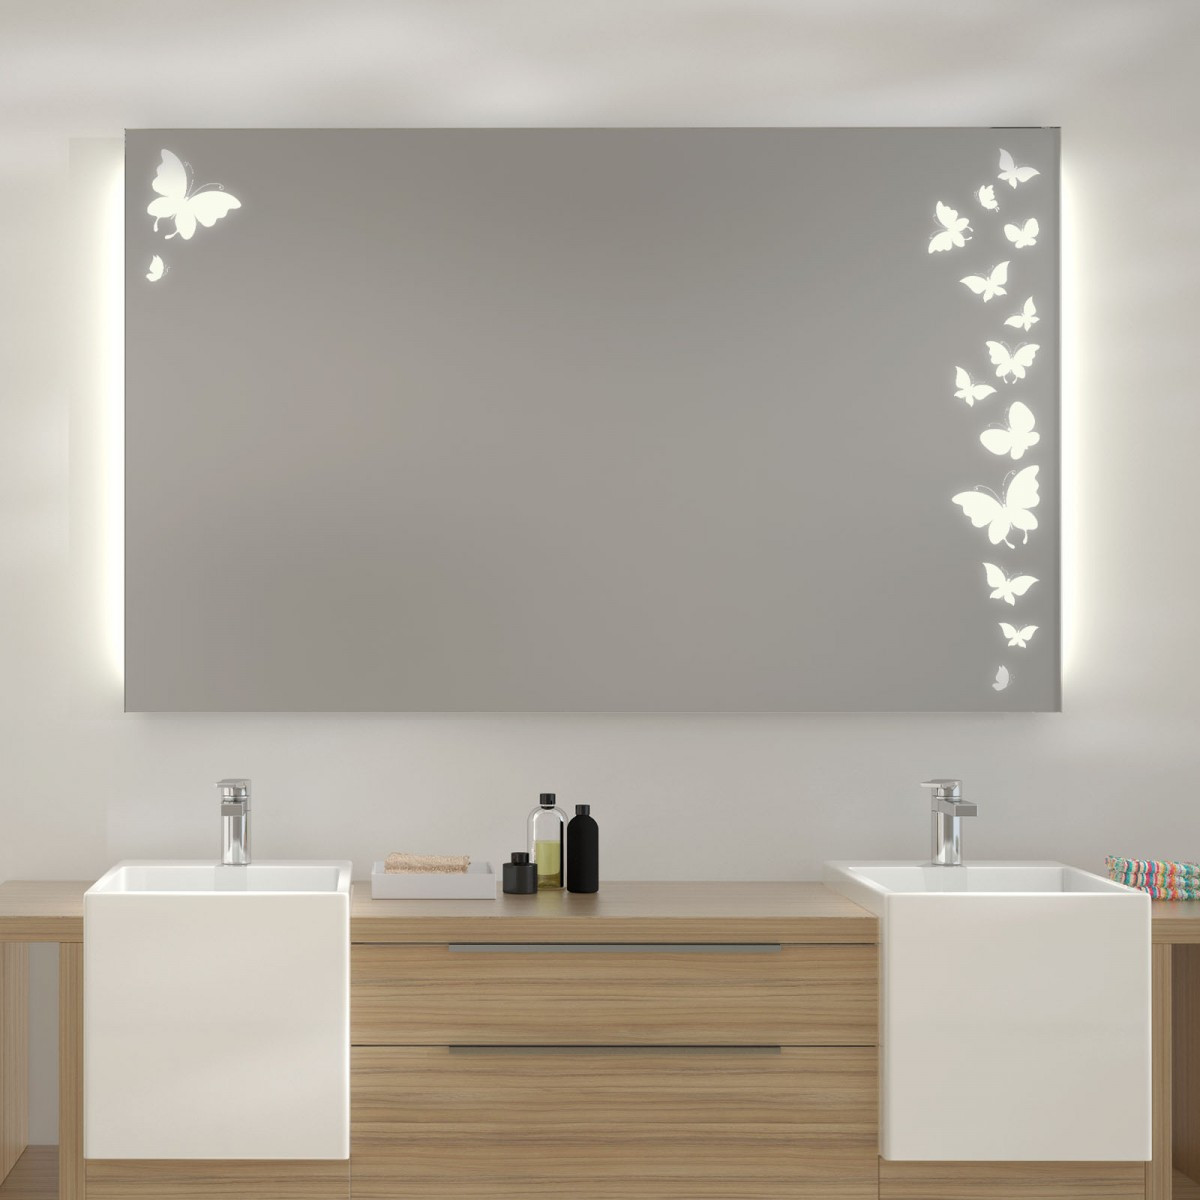 Badspiegel Mit Led Beleuchtung
 Spiegel mit LED Beleuchtung Ulm